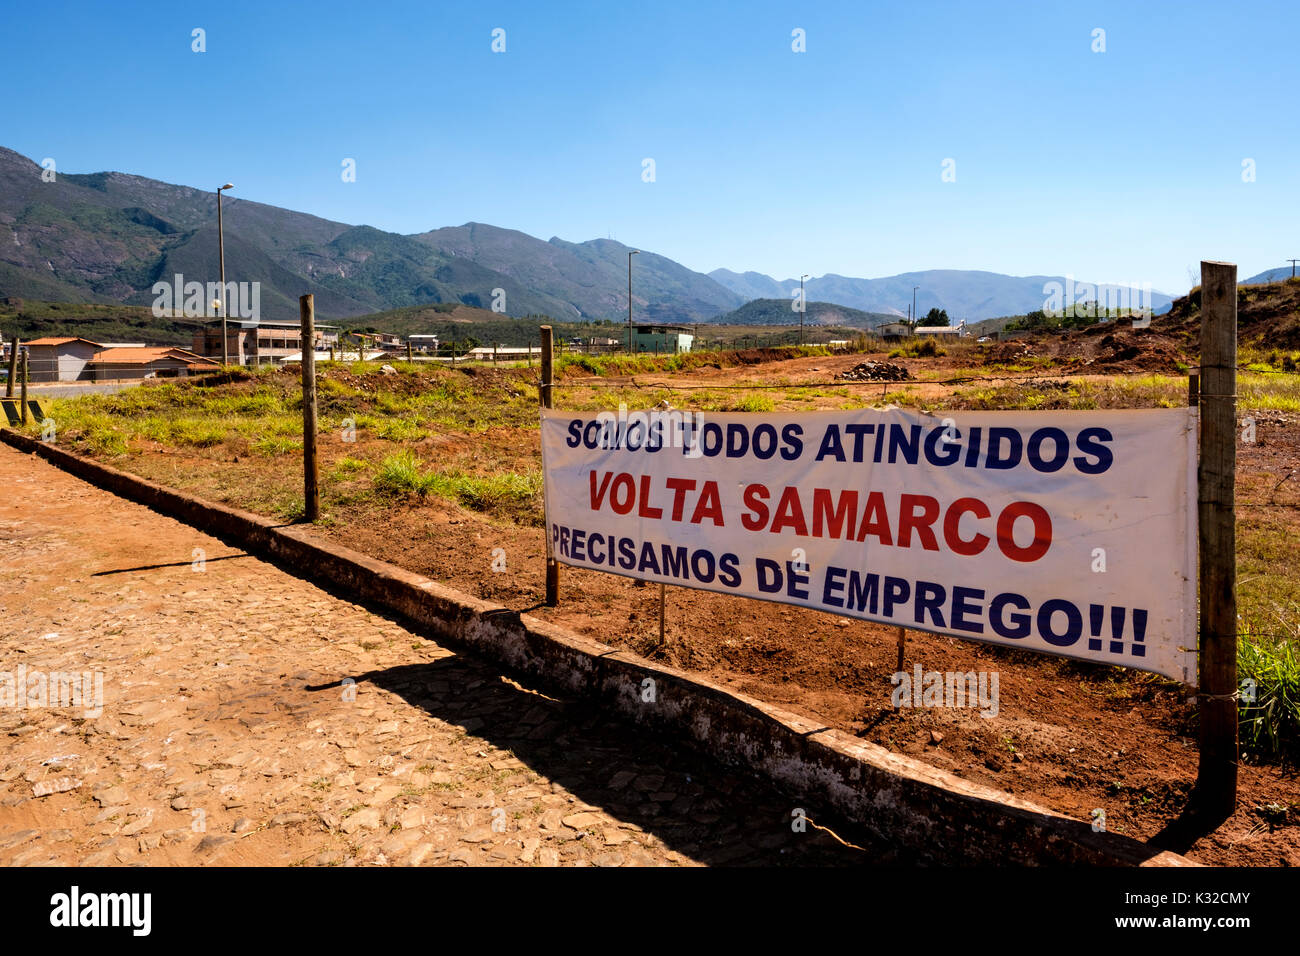 Une bannière sur un appel pour le retour de Samarco Mineração à Bento Rodrigues, Mariana région en raison de l'absence d'emplois, Minas Gerais, Brésil. Banque D'Images